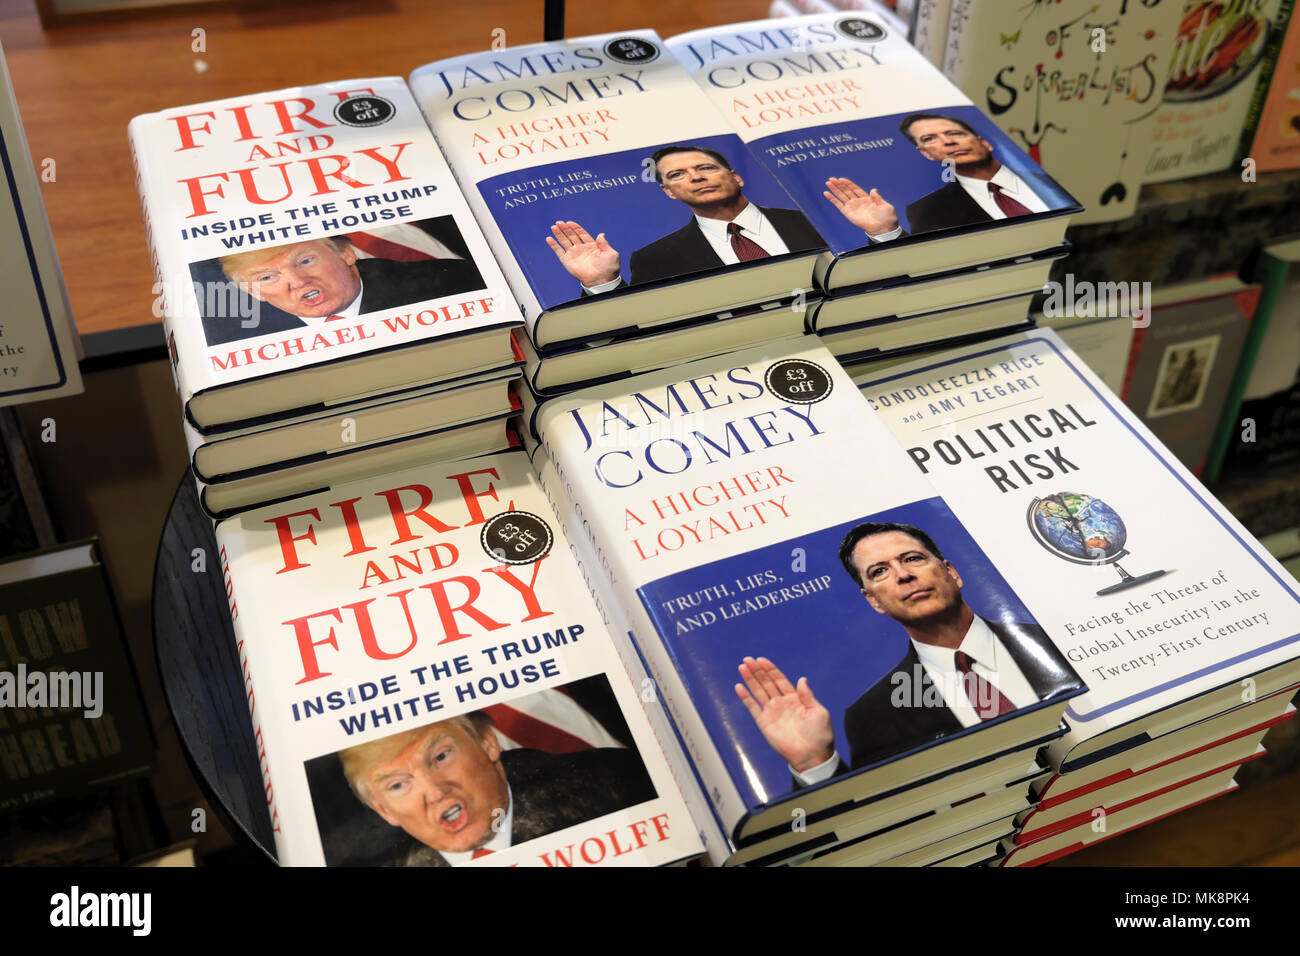 "Feuer und Wut" Michael Wolfe Buch und" eine höhere Loyalität' James Comey Bücher mit Schwerpunkt auf Donald Trump Verhalten zum Verkauf in der Buchhandlung DE KATHY DEWITT Stockfoto